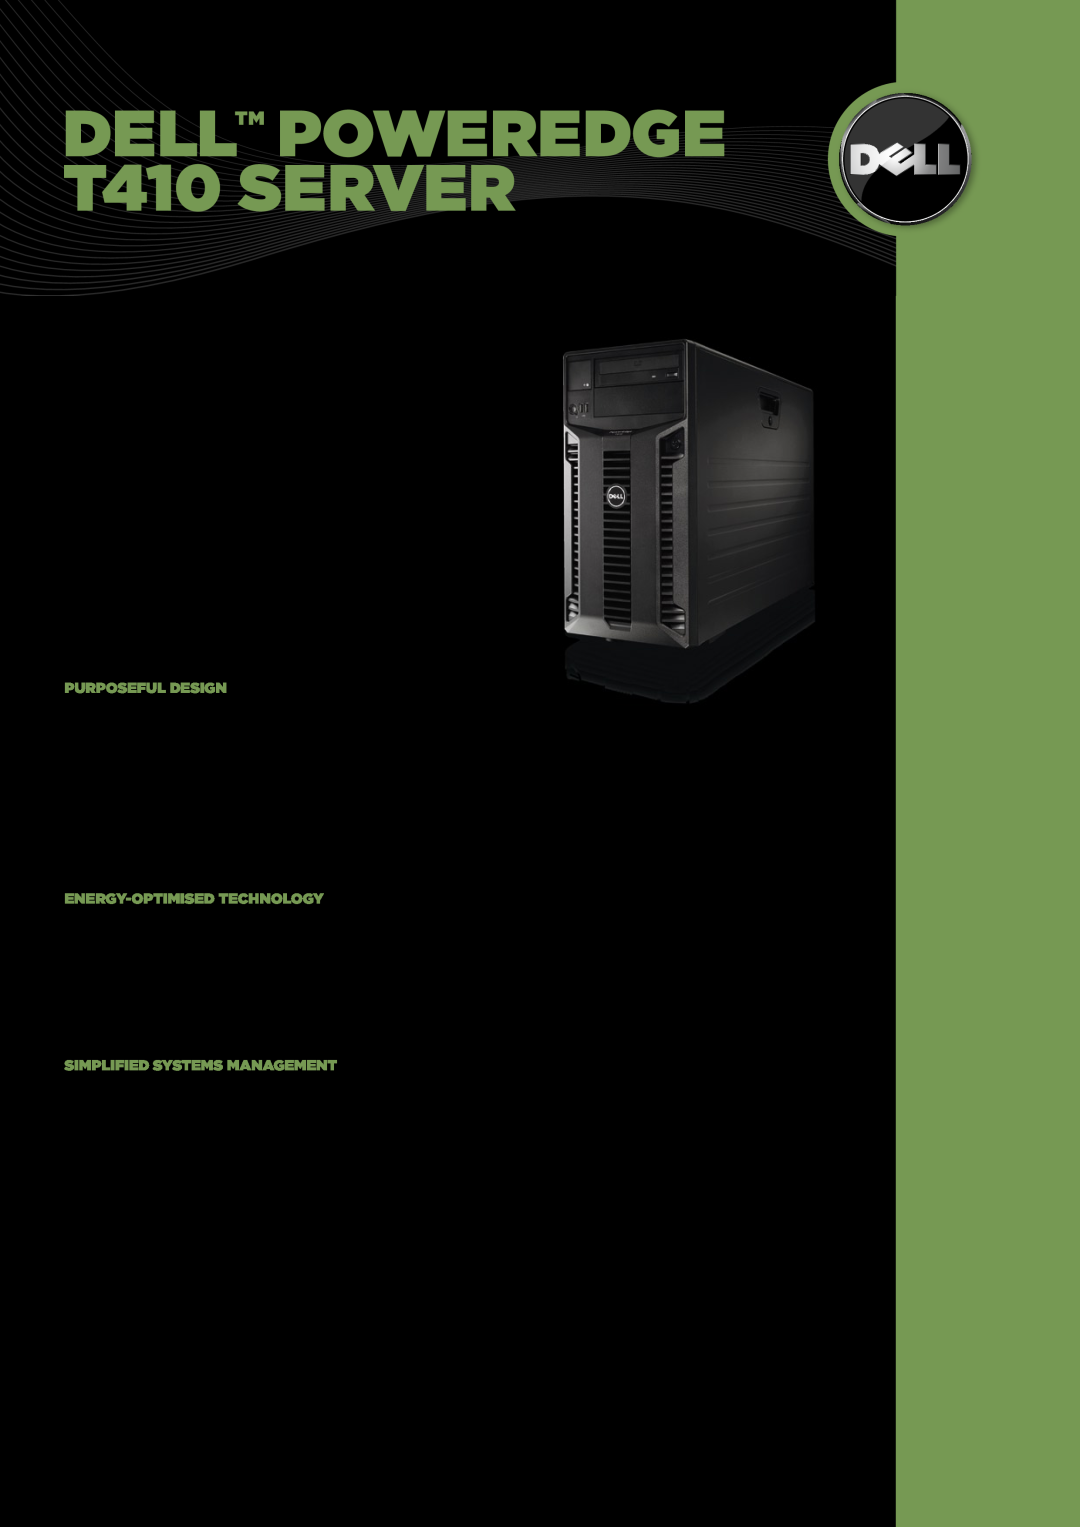 Dell manual Dell PowerEdge T410 Server 